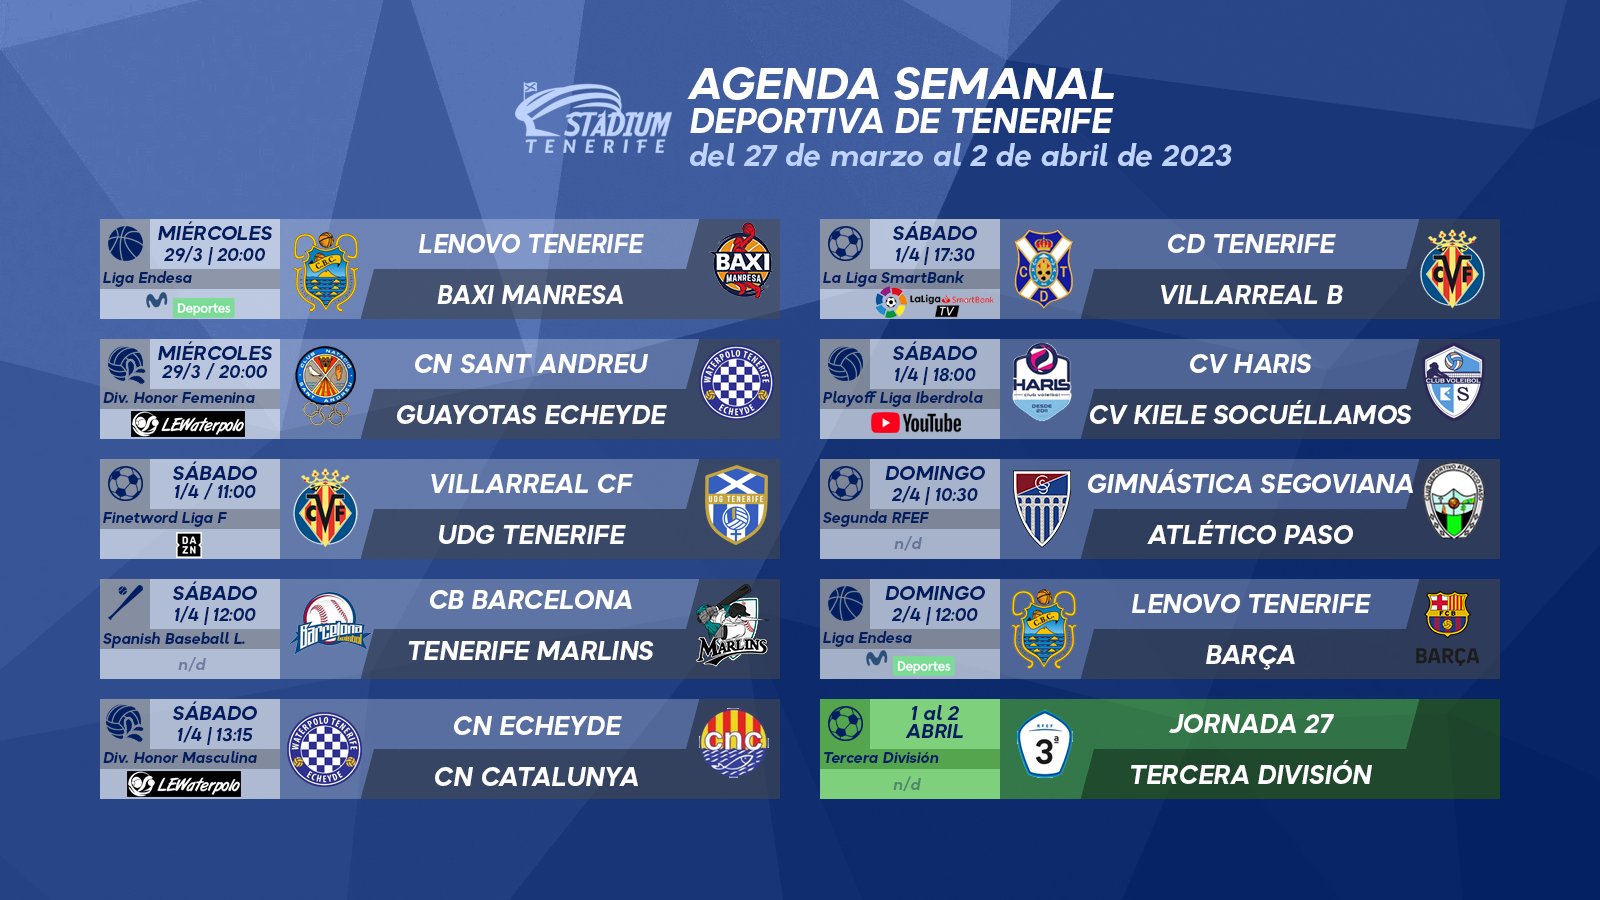 Agenda Semanal Deportiva de Tenerife (27 de marzo al 2 de abril)